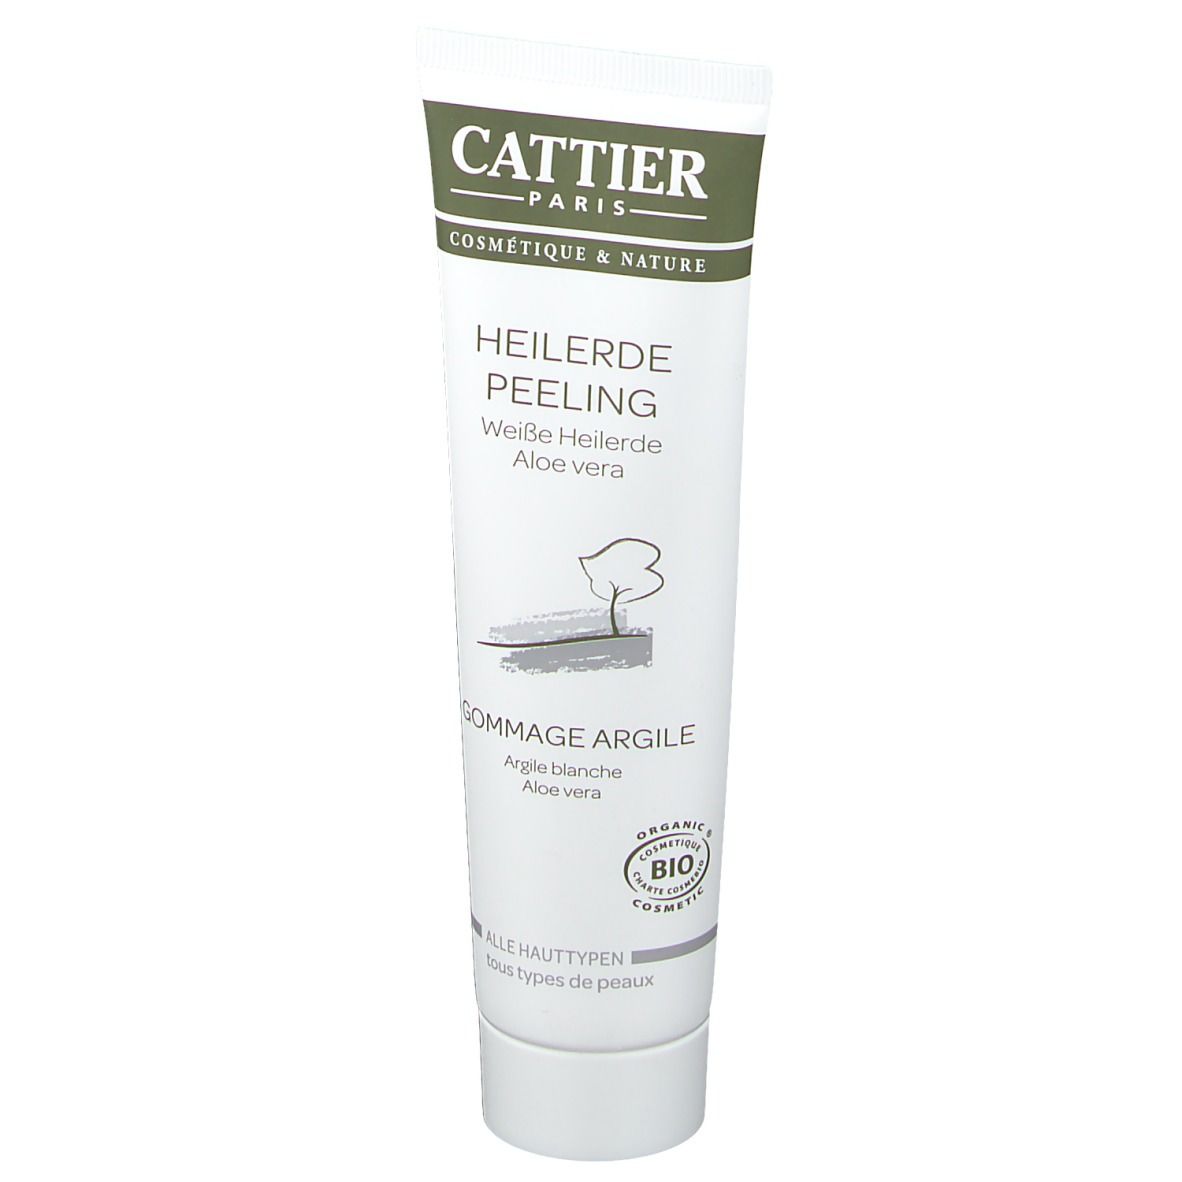 CATTIER Weiße Heilerde Peeling für alle Hauttypen